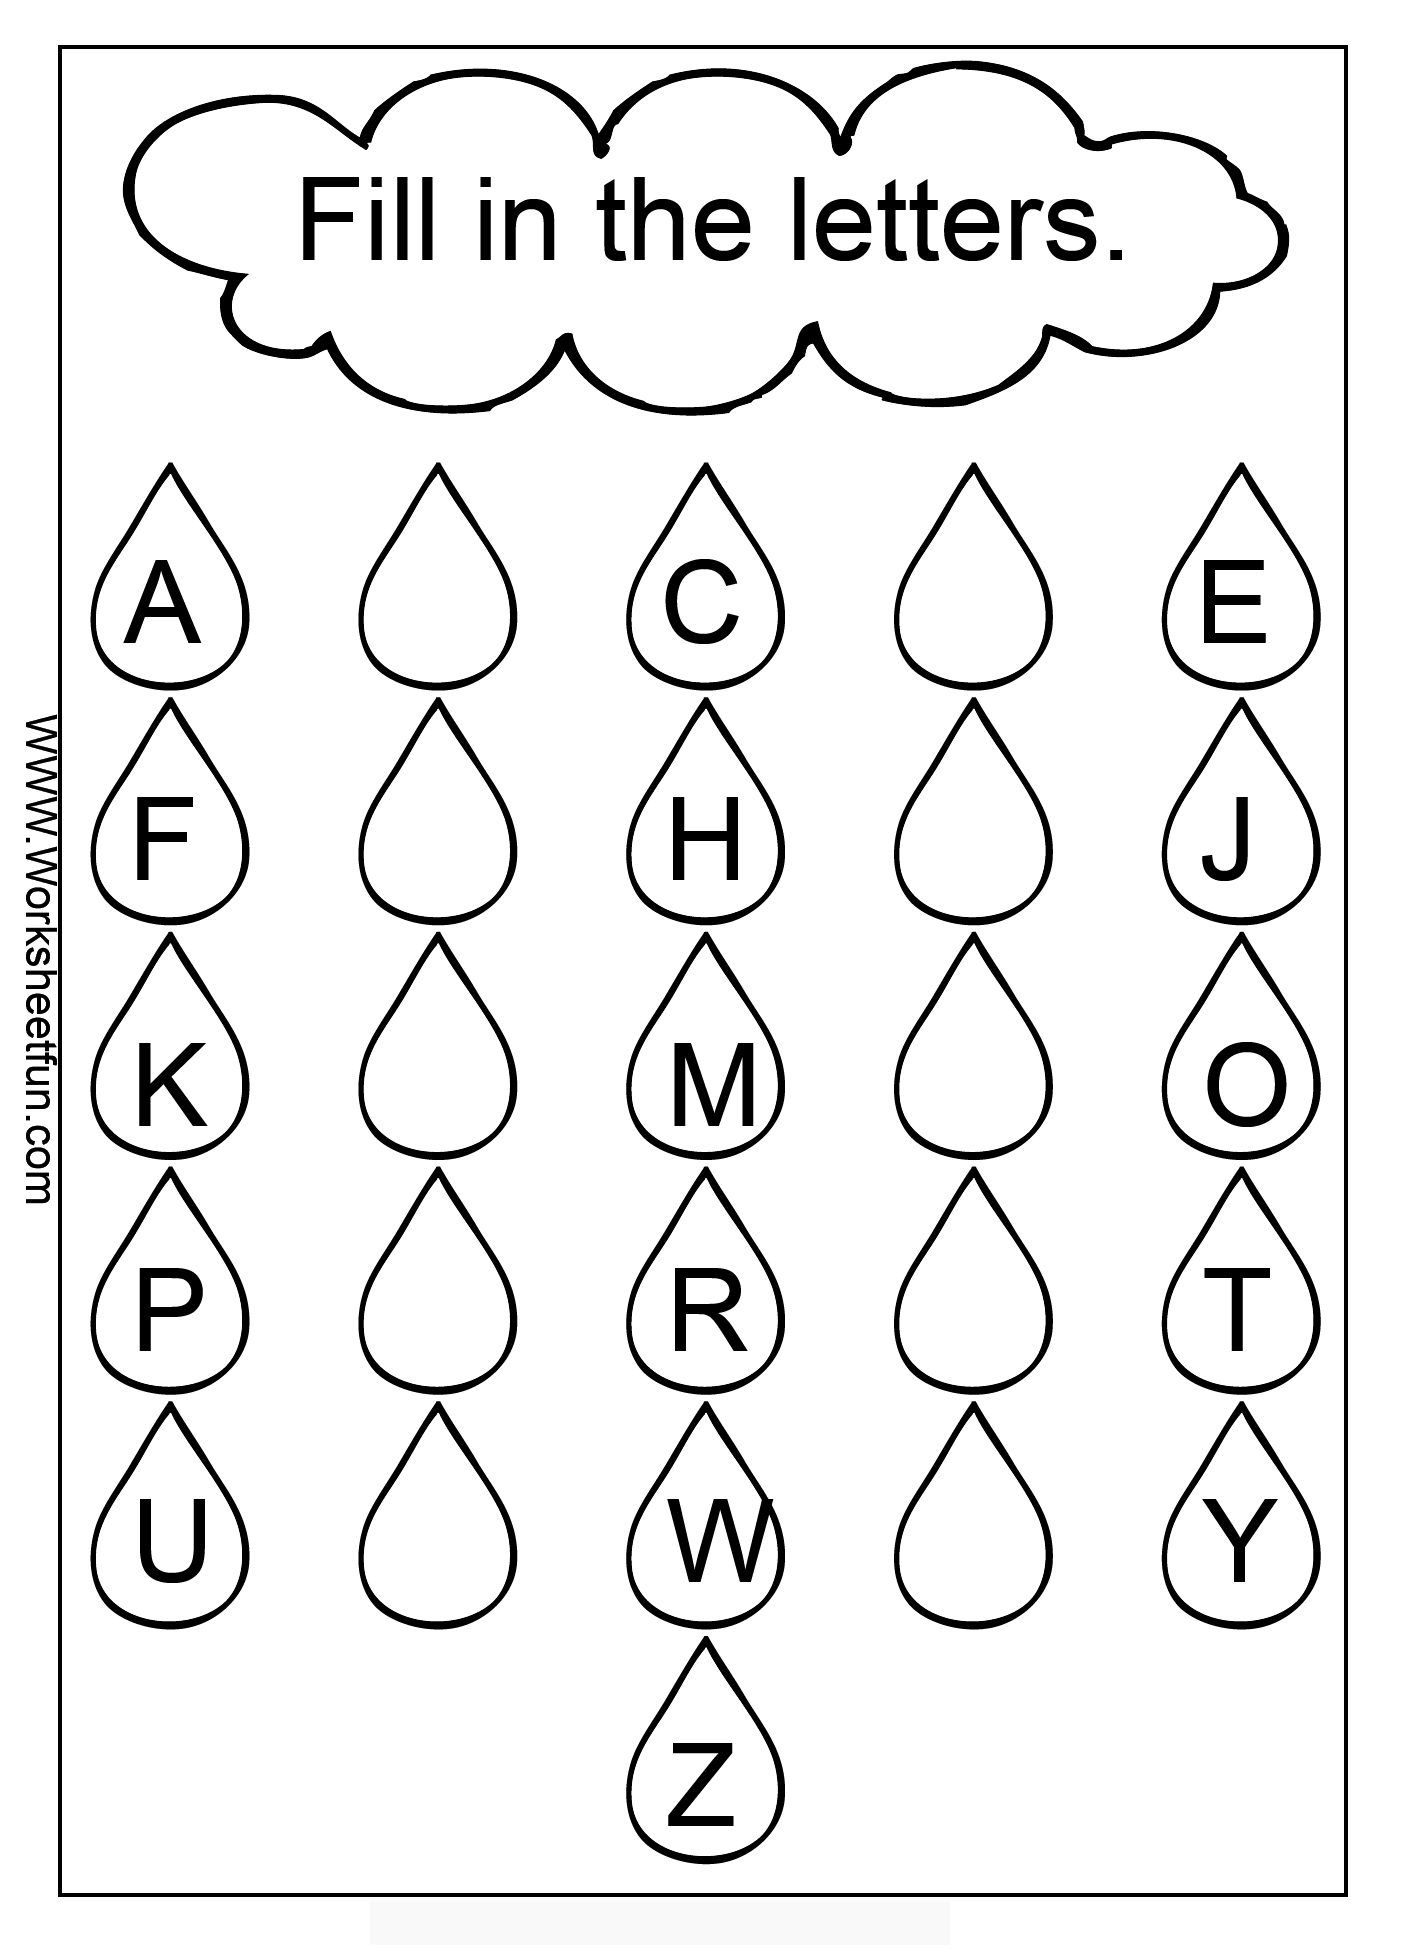 9 Images of Alphabet Missing Letter Worksheet